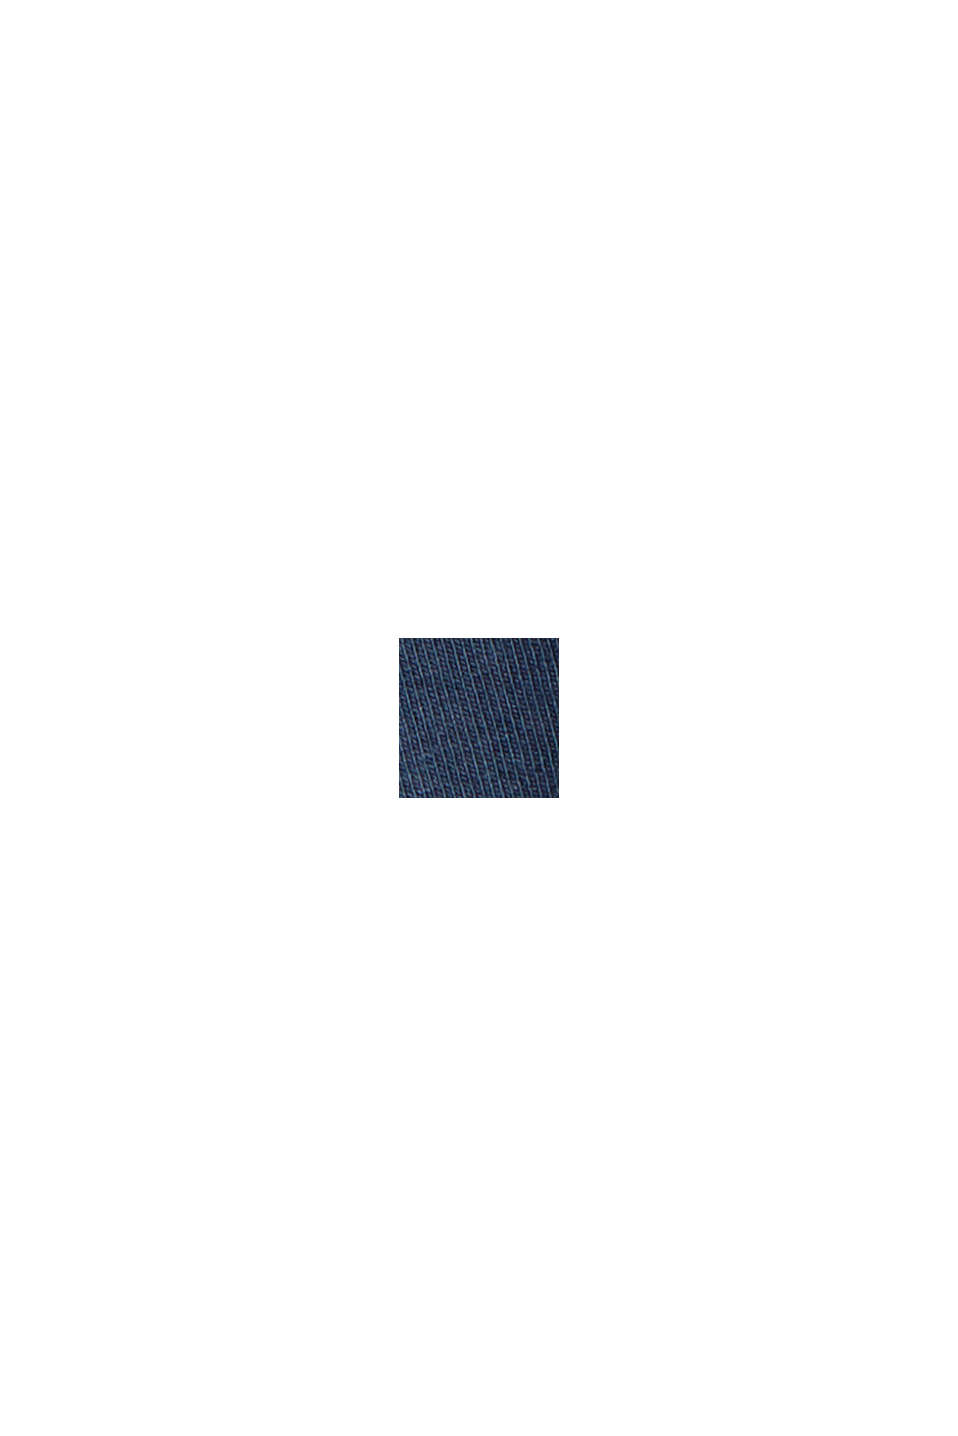 Cotone biologico/TENCEL™: maglia a maniche lunghe con intaglio, NAVY, swatch